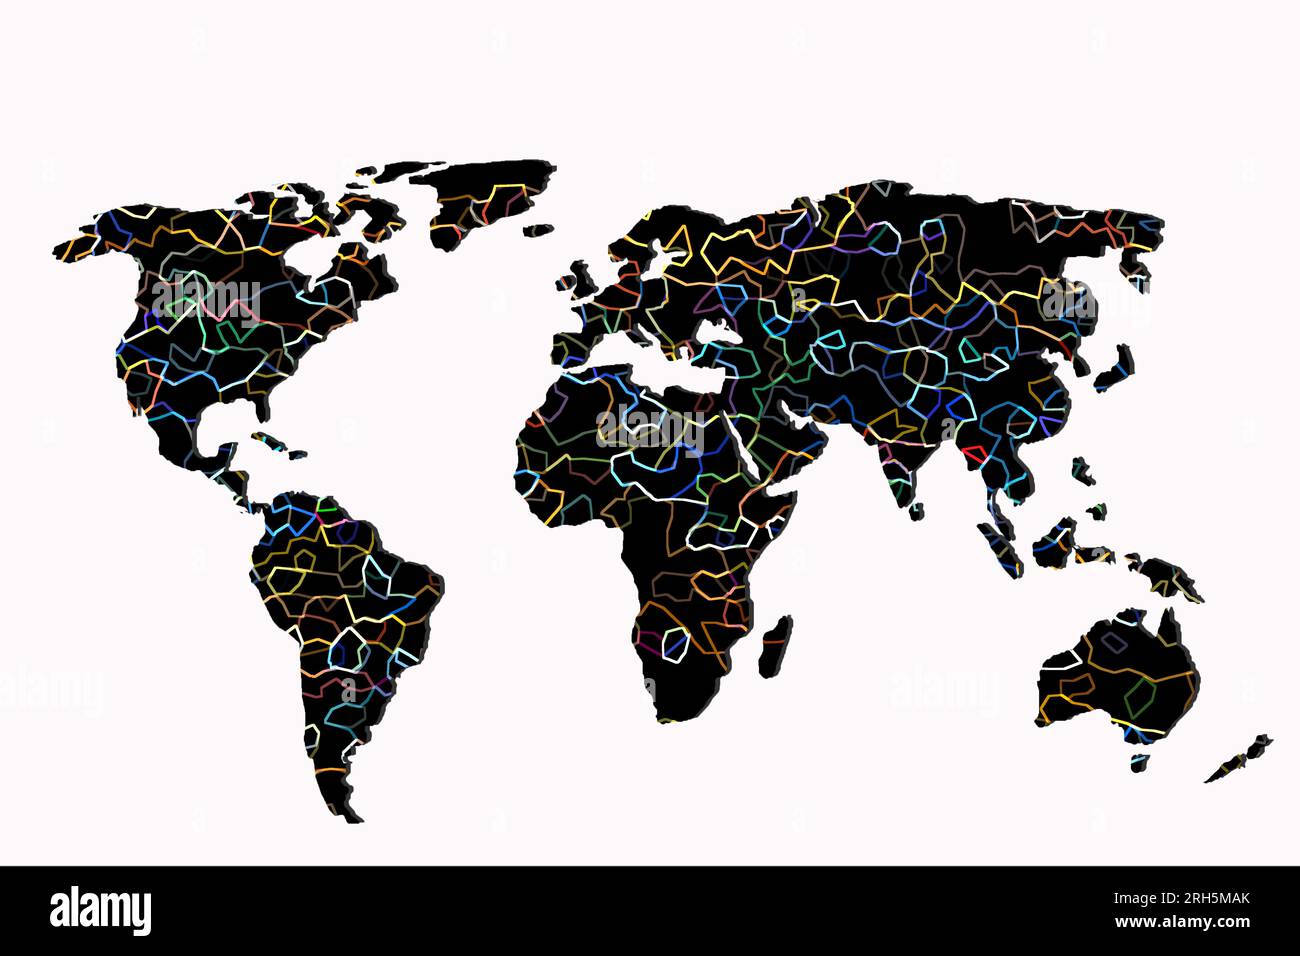 Aproximadamente esbozado mapa del mundo como conceptos empresariales globales Foto de stock